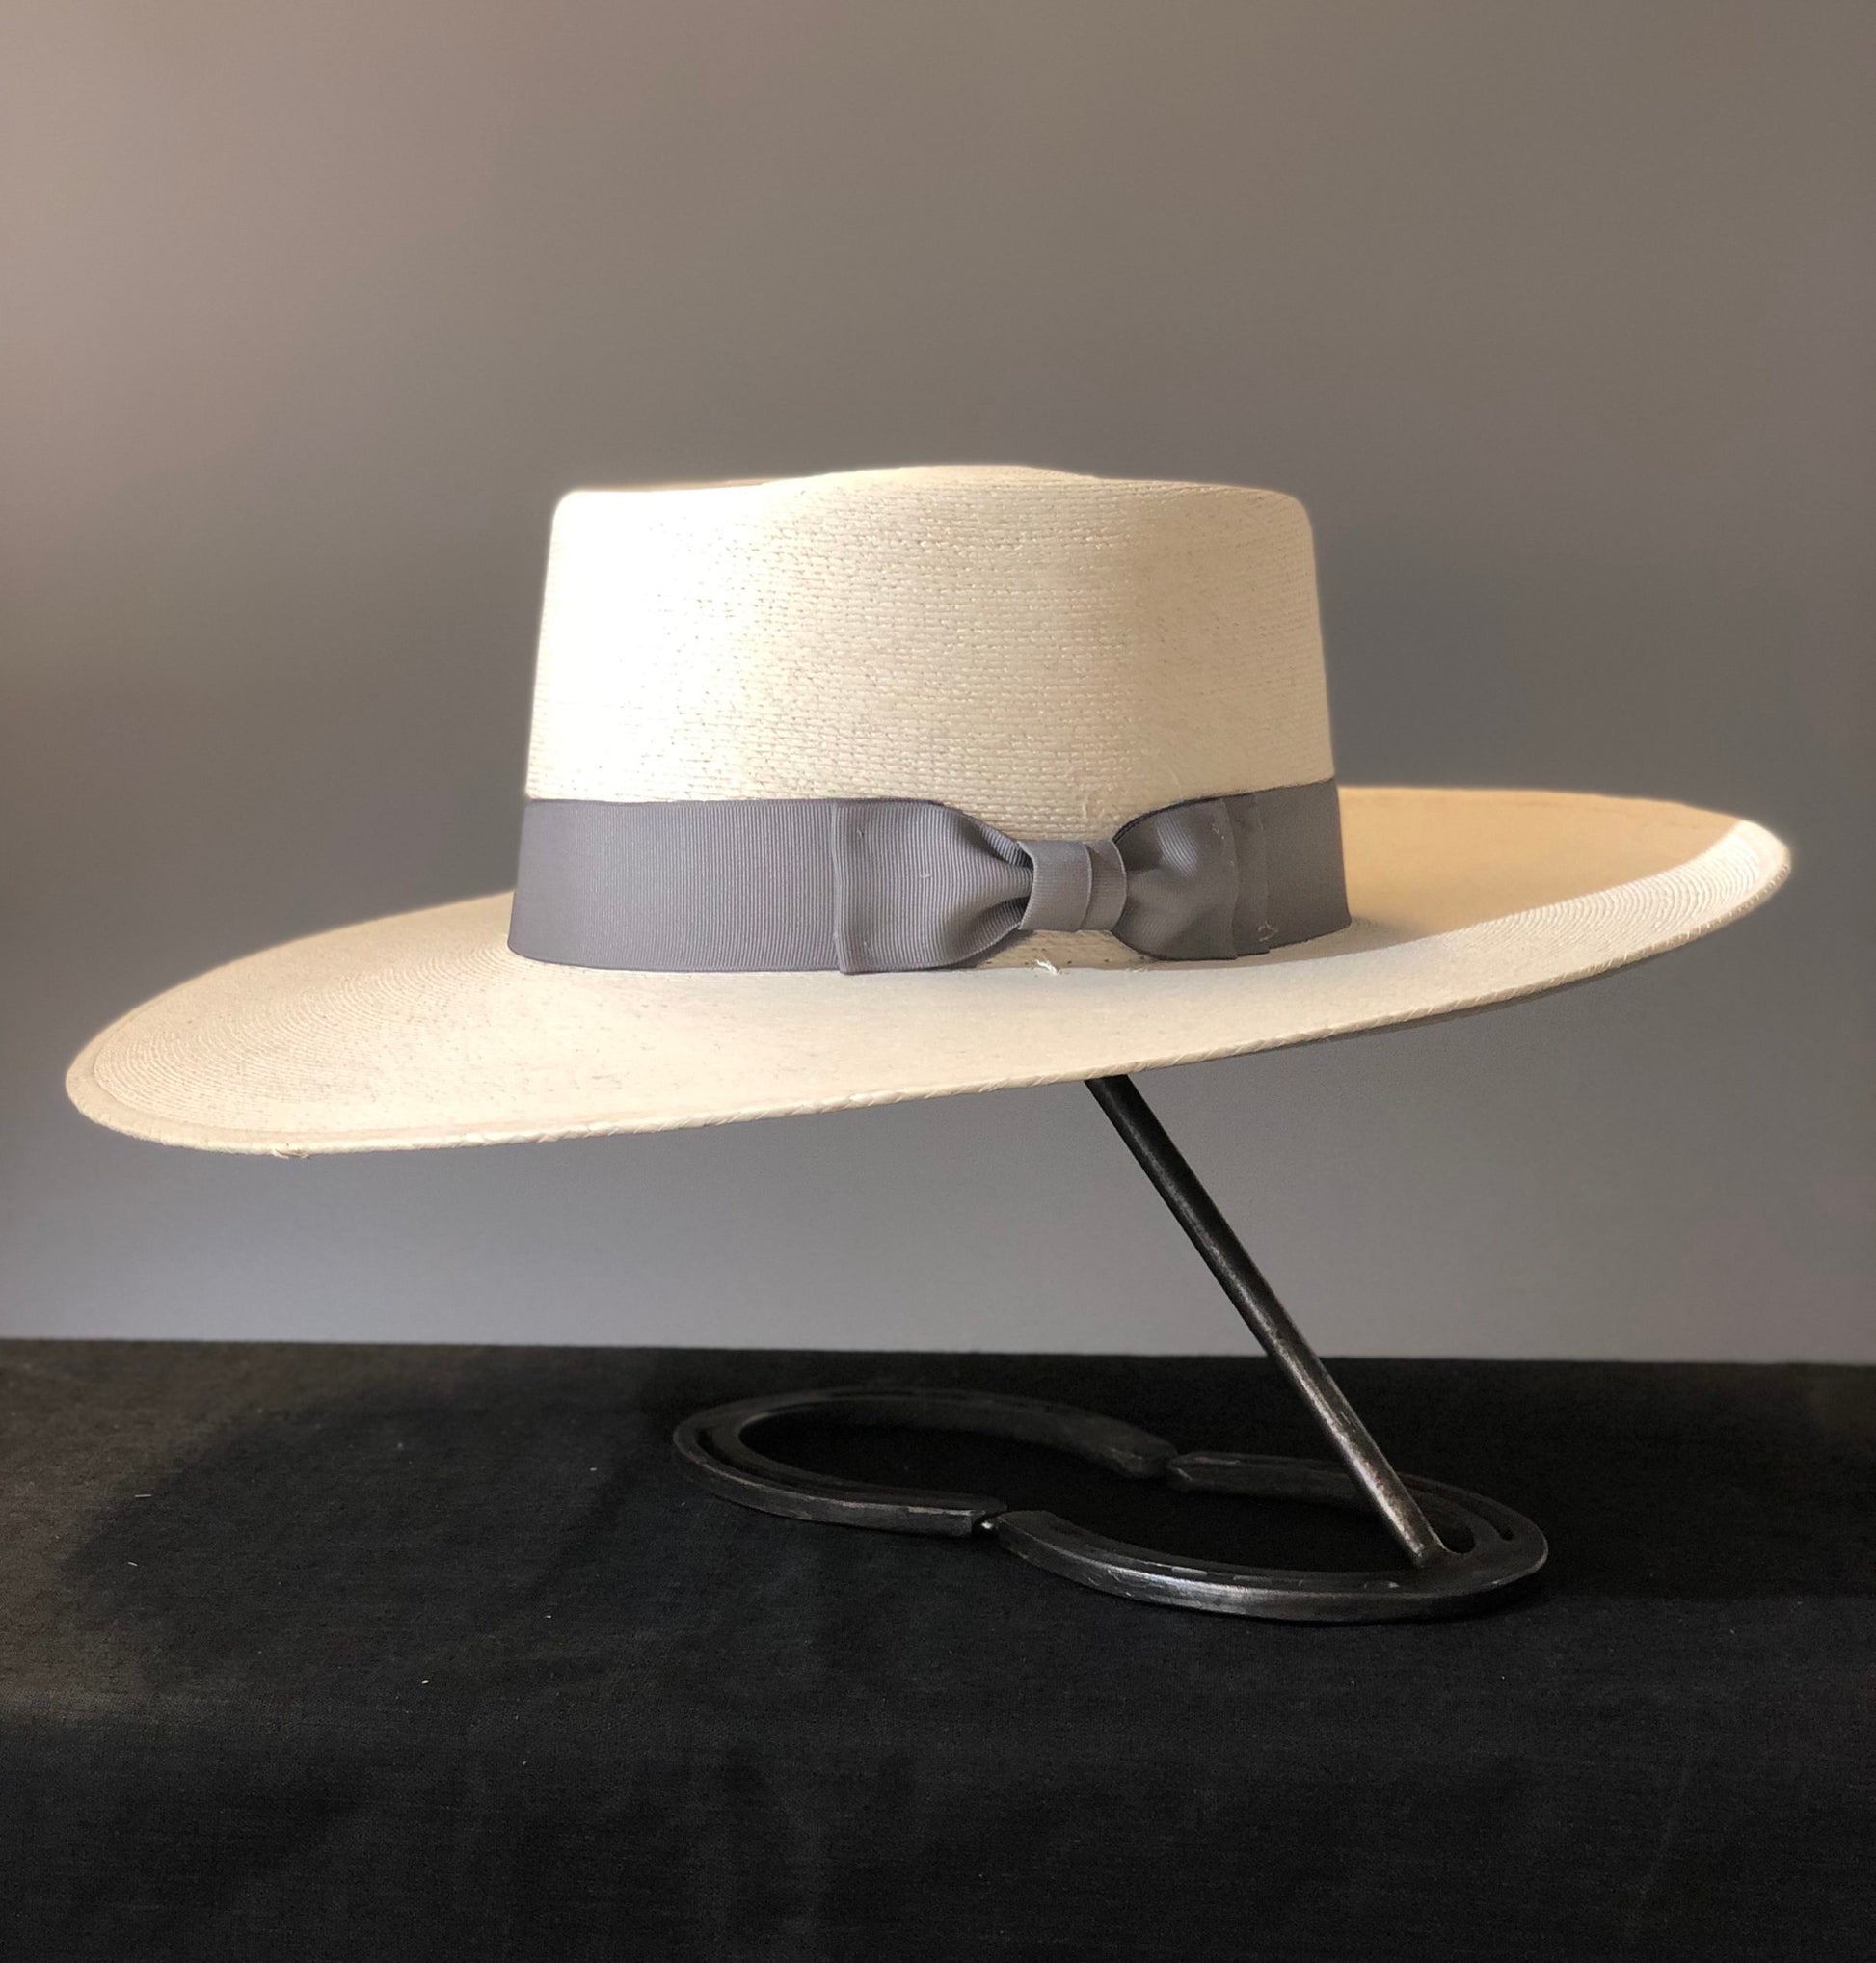 Buckaroo Hat Bands – Buckaroo Leather Products